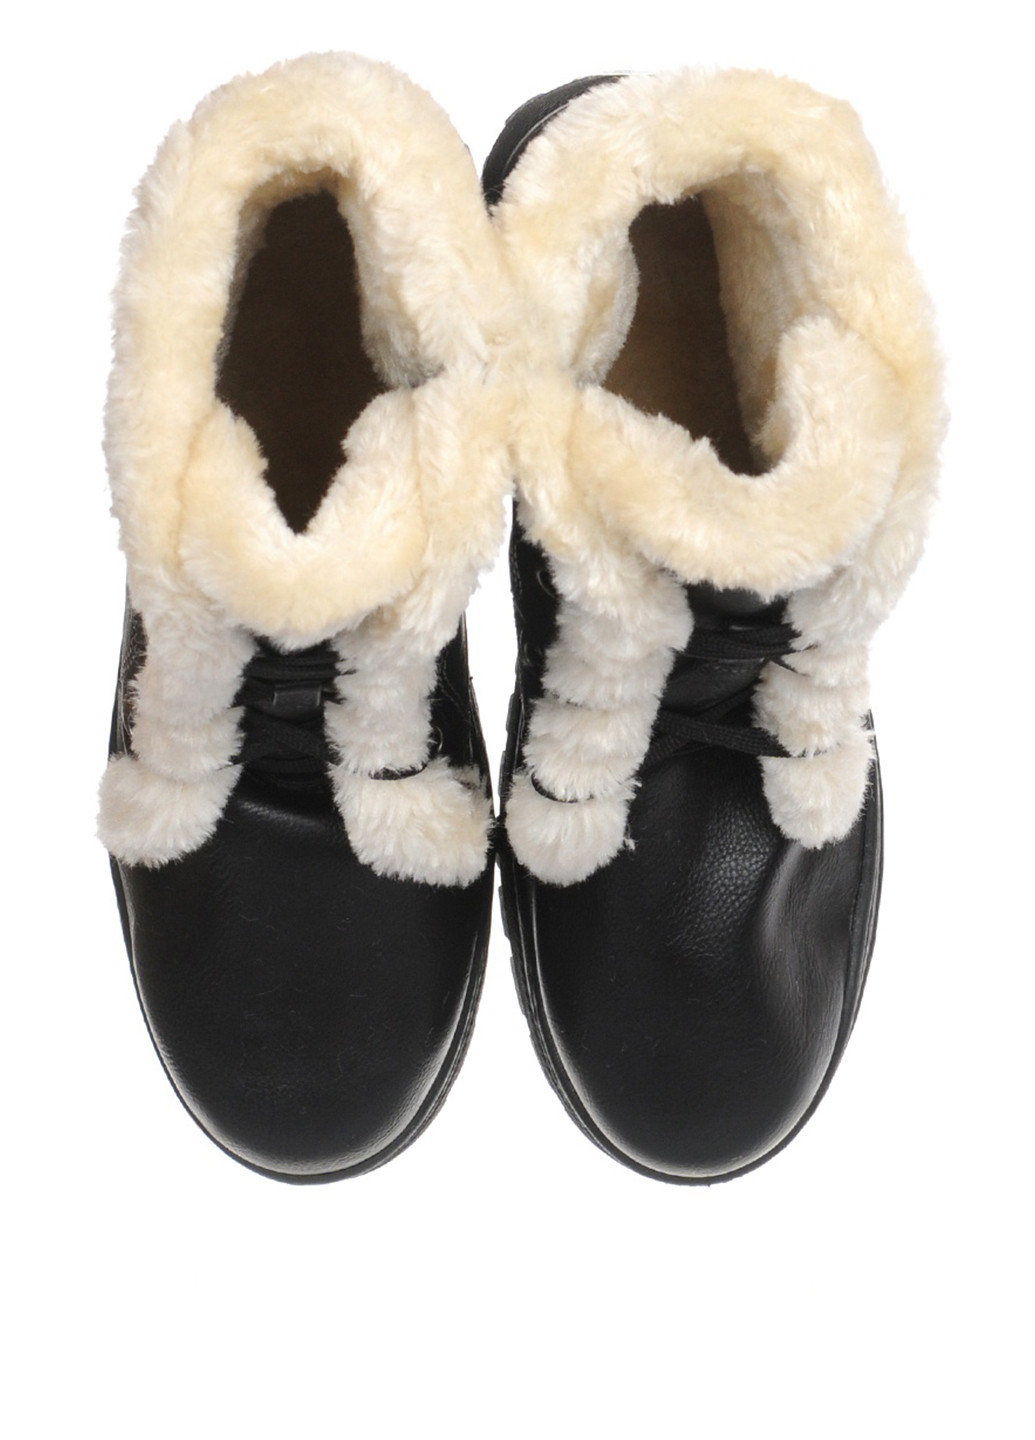 Зимние ботинки тимберленды DF-Shoes с мехом из искусственной кожи